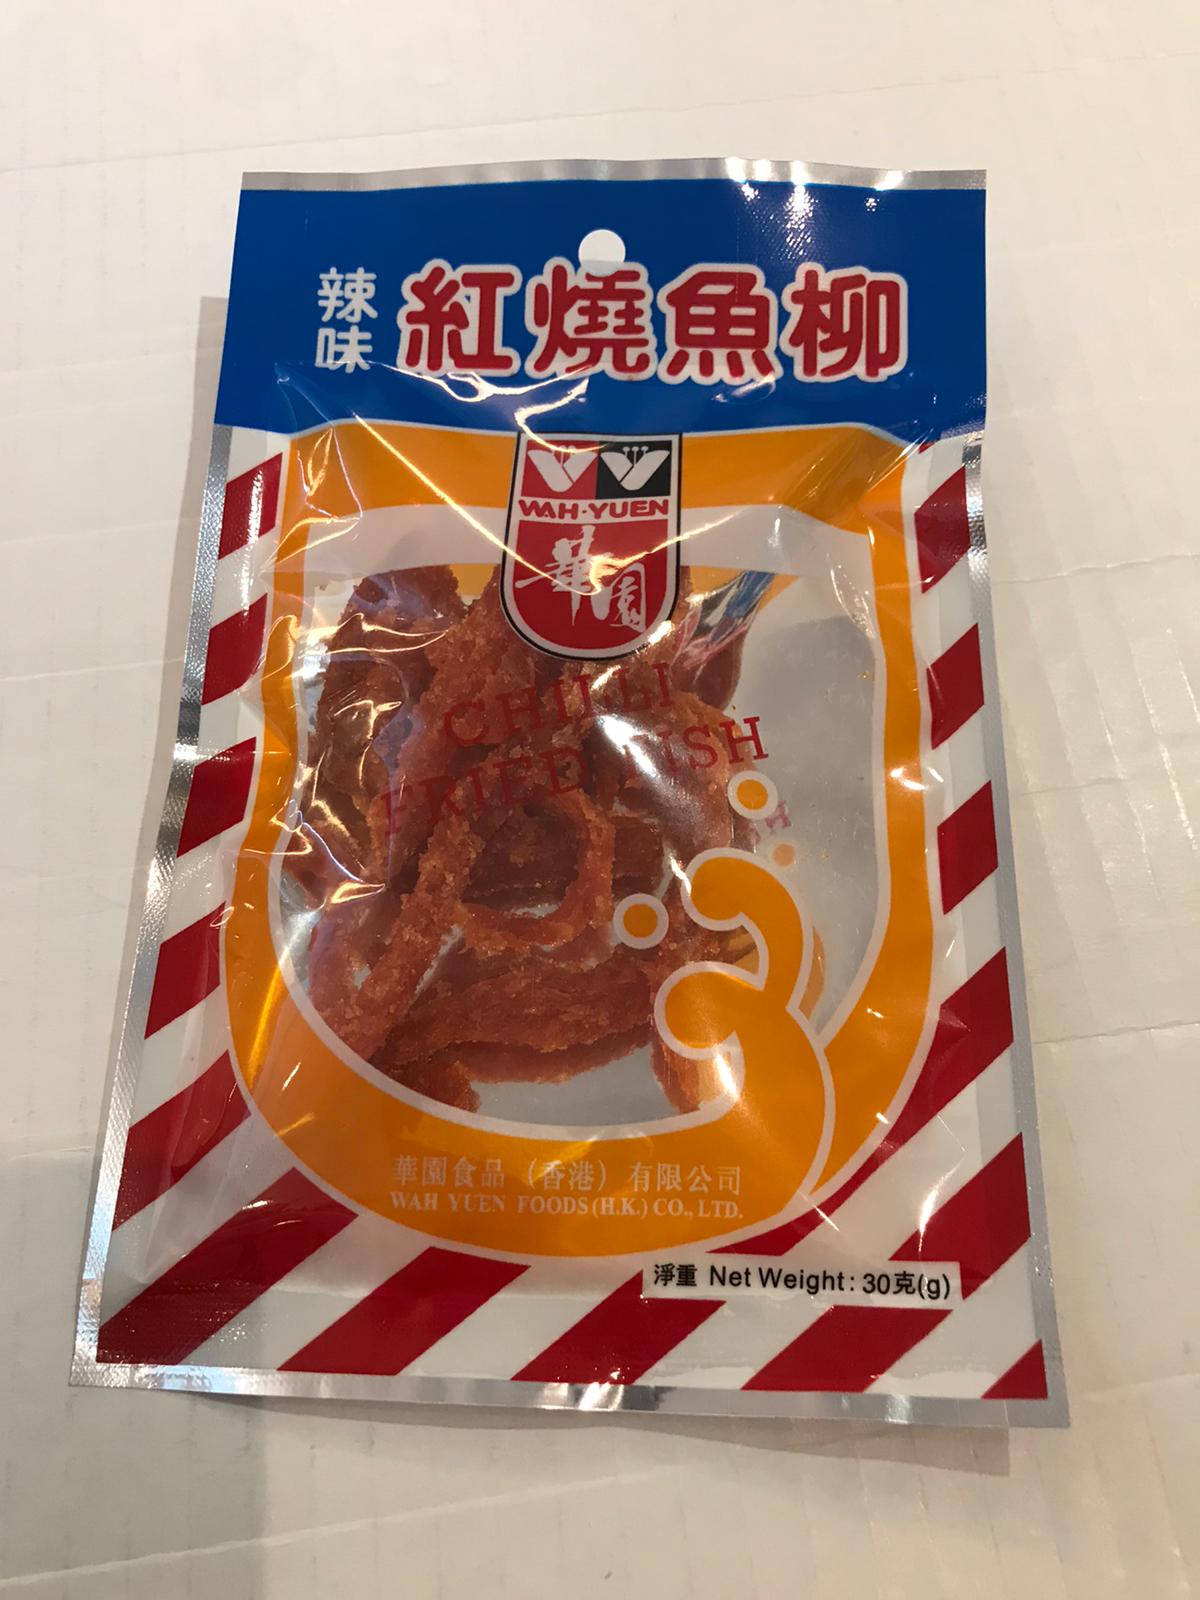 Wah Yuen chilli fried fish 華園紅燒魚柳